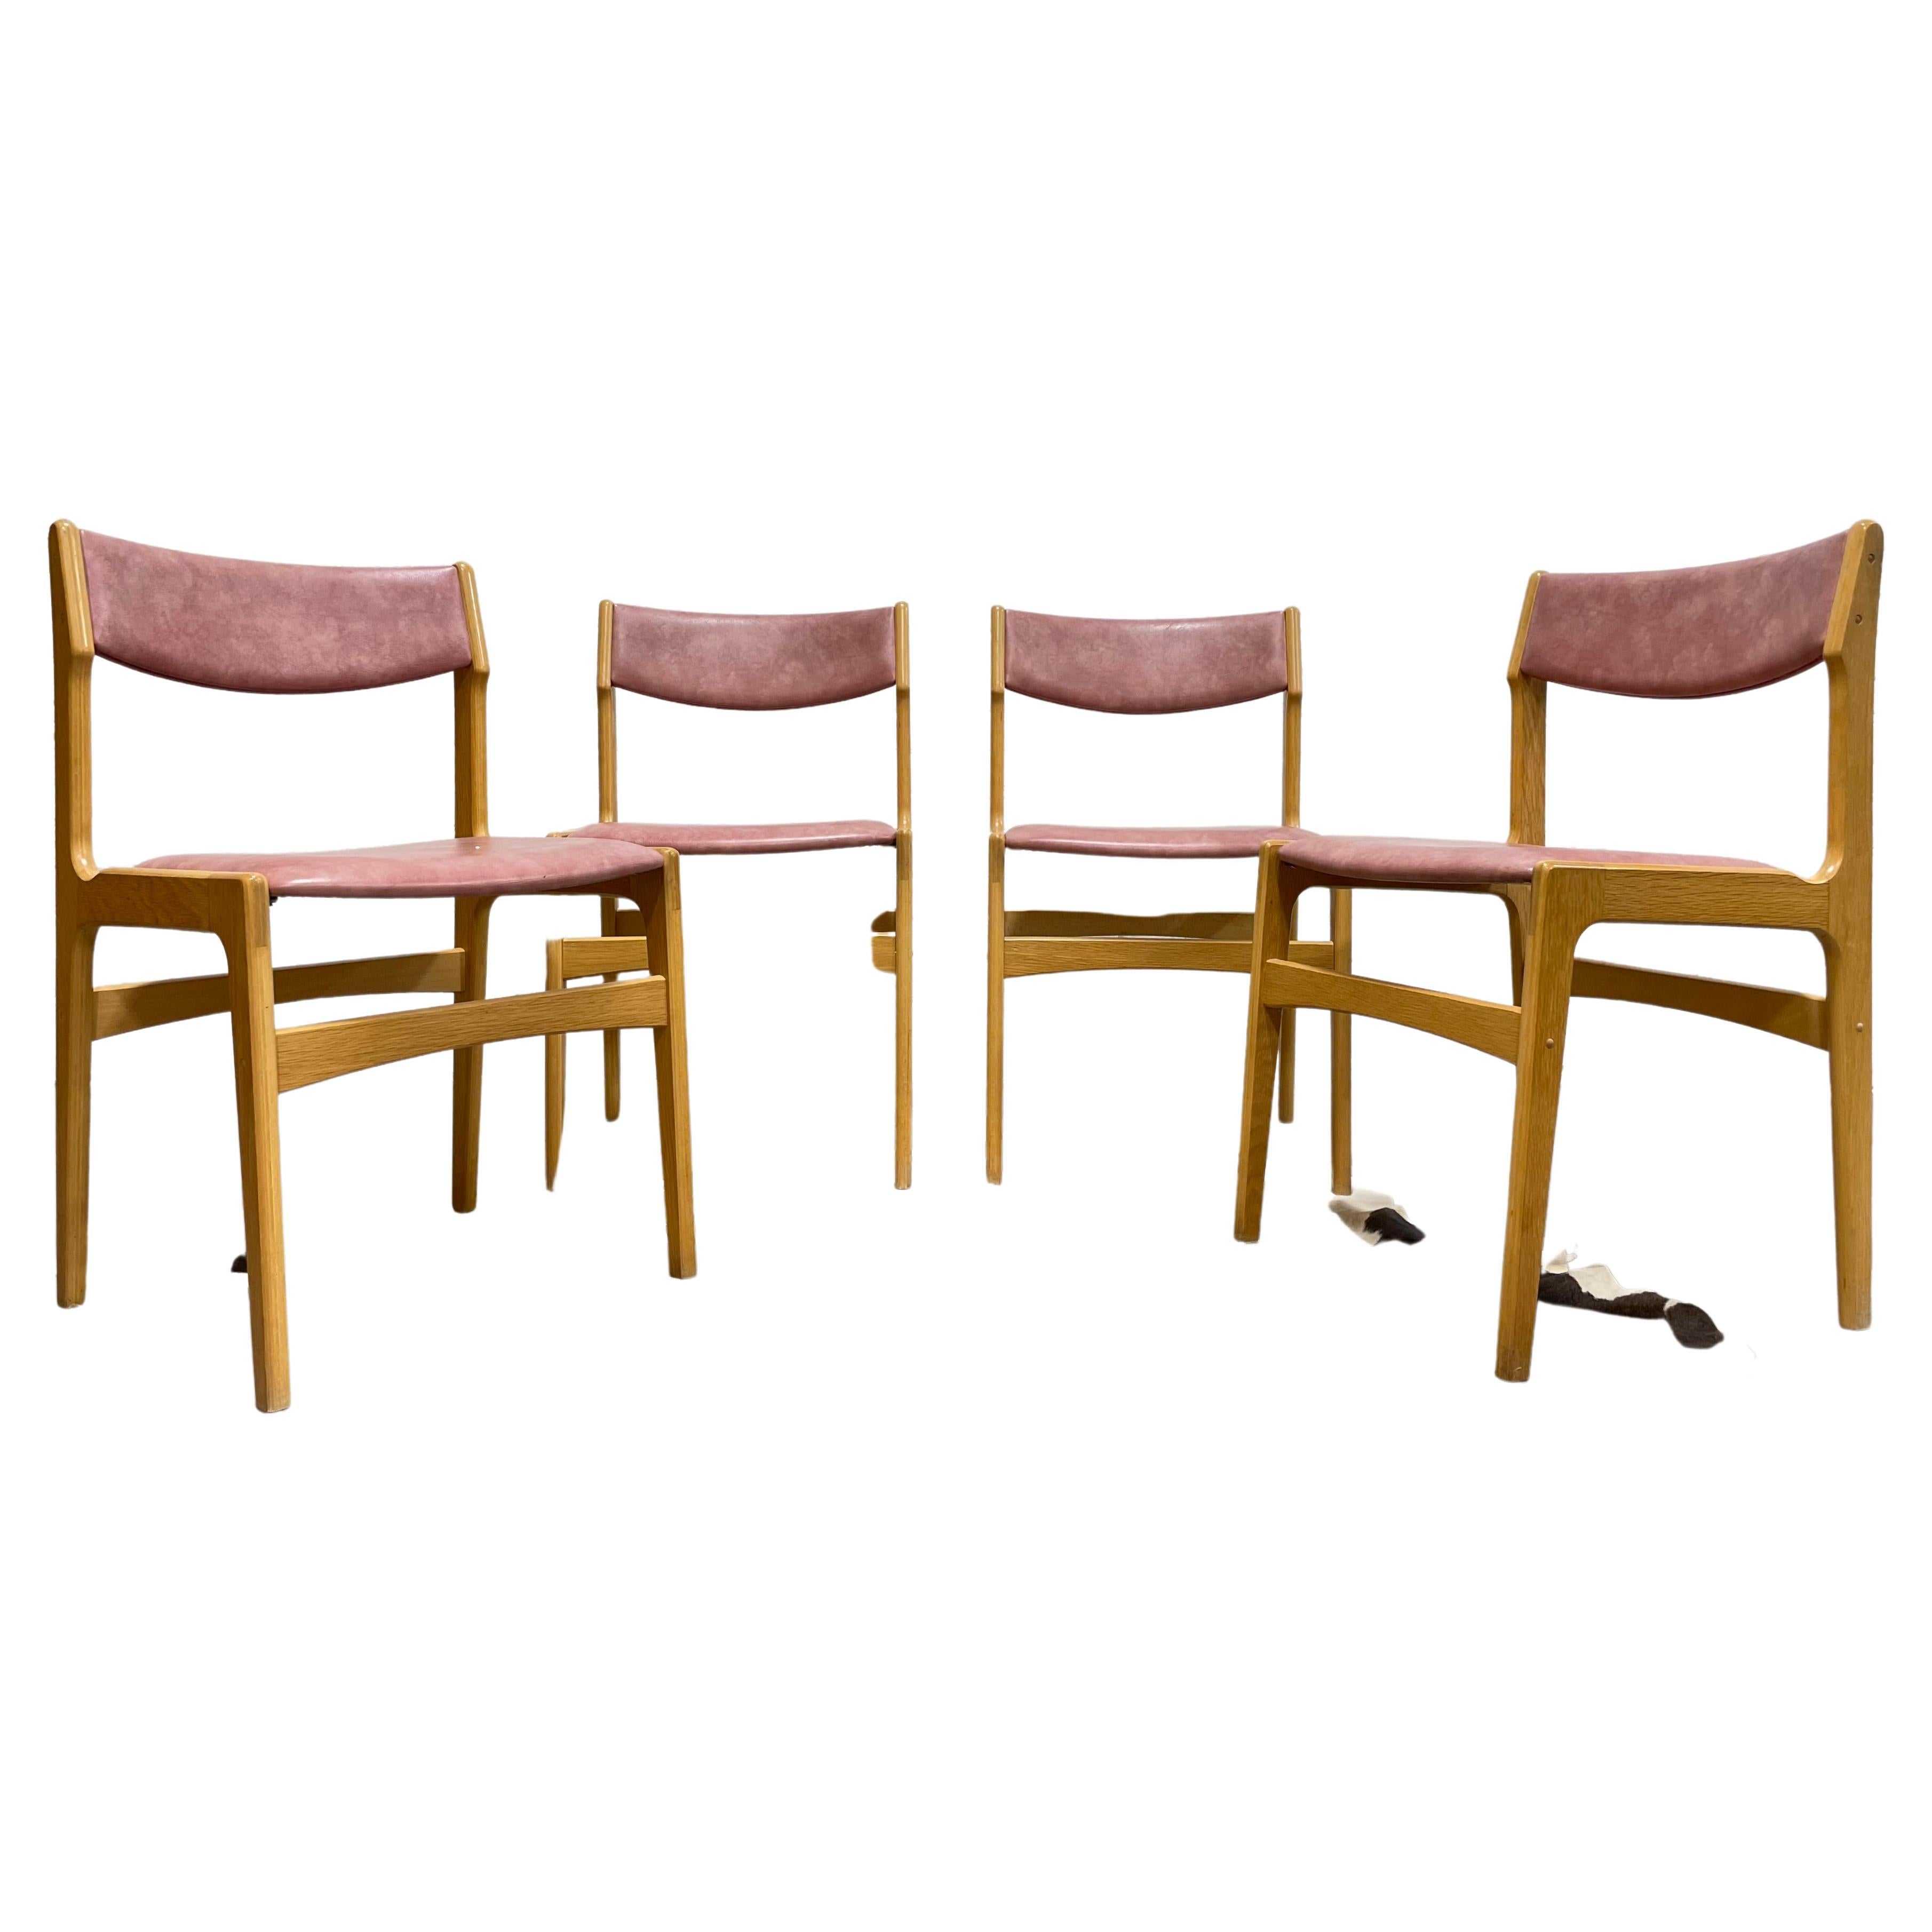 Ensemble de quatre chaises de salle à manger en chêne de style moderne du milieu du siècle avec revêtement en Naugahyde rose. Magnifiquement sculptées, ces chaises super confortables présentent un design organique et des cadres en chêne glorieux qui